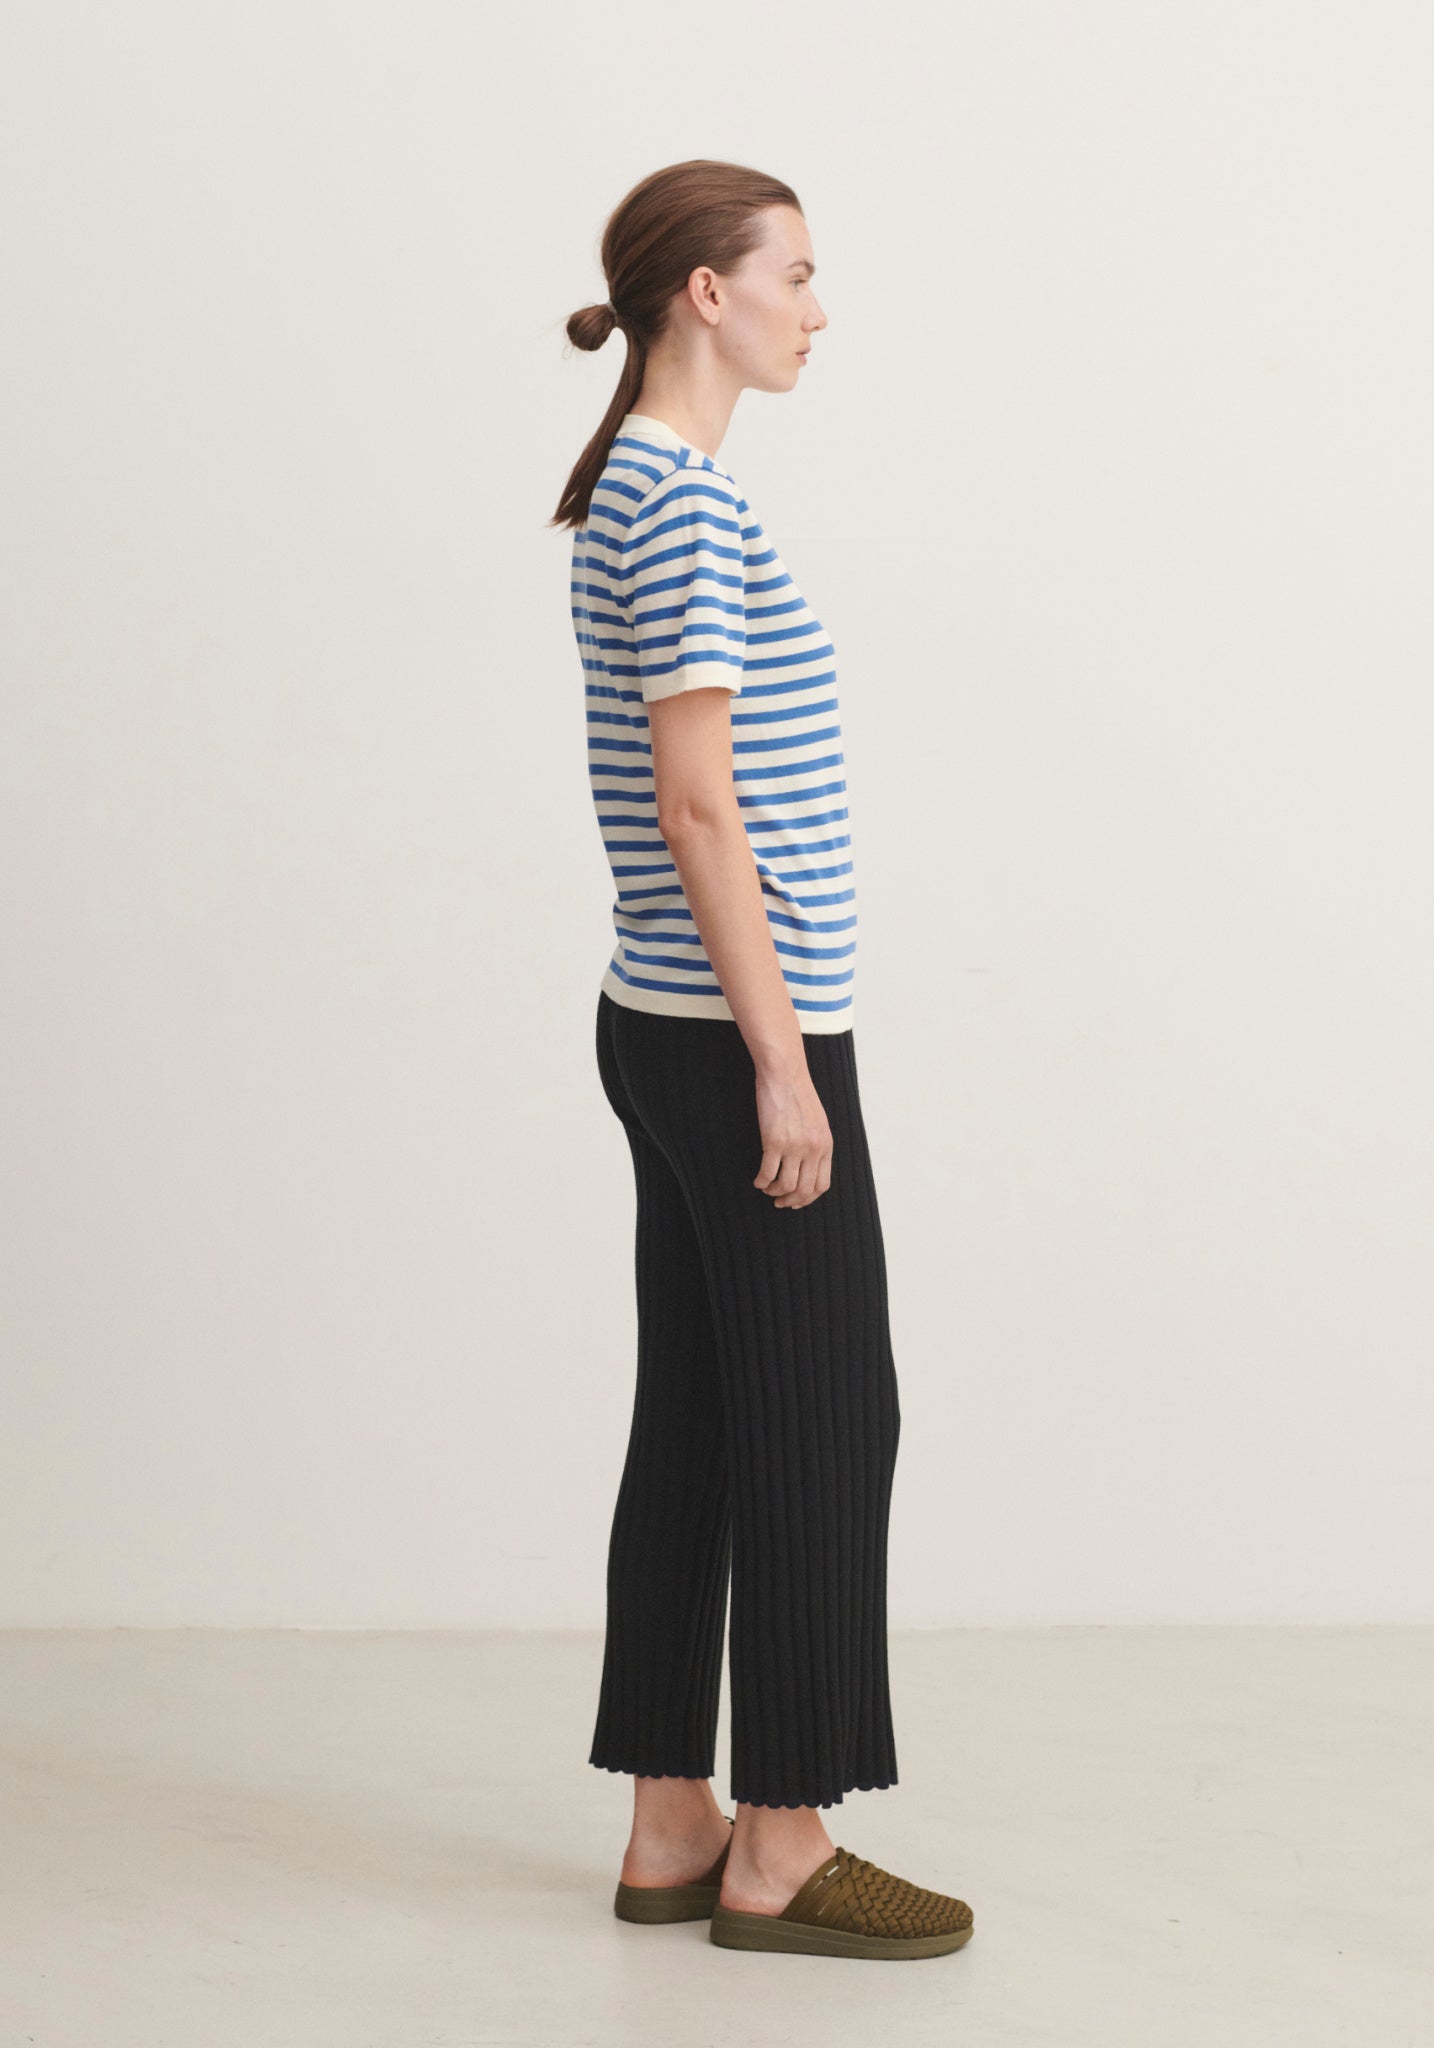 Tricou femei din bumbac - Extrafin Classic Stripe Ecru/Azure FUB Woman HipHip.ro